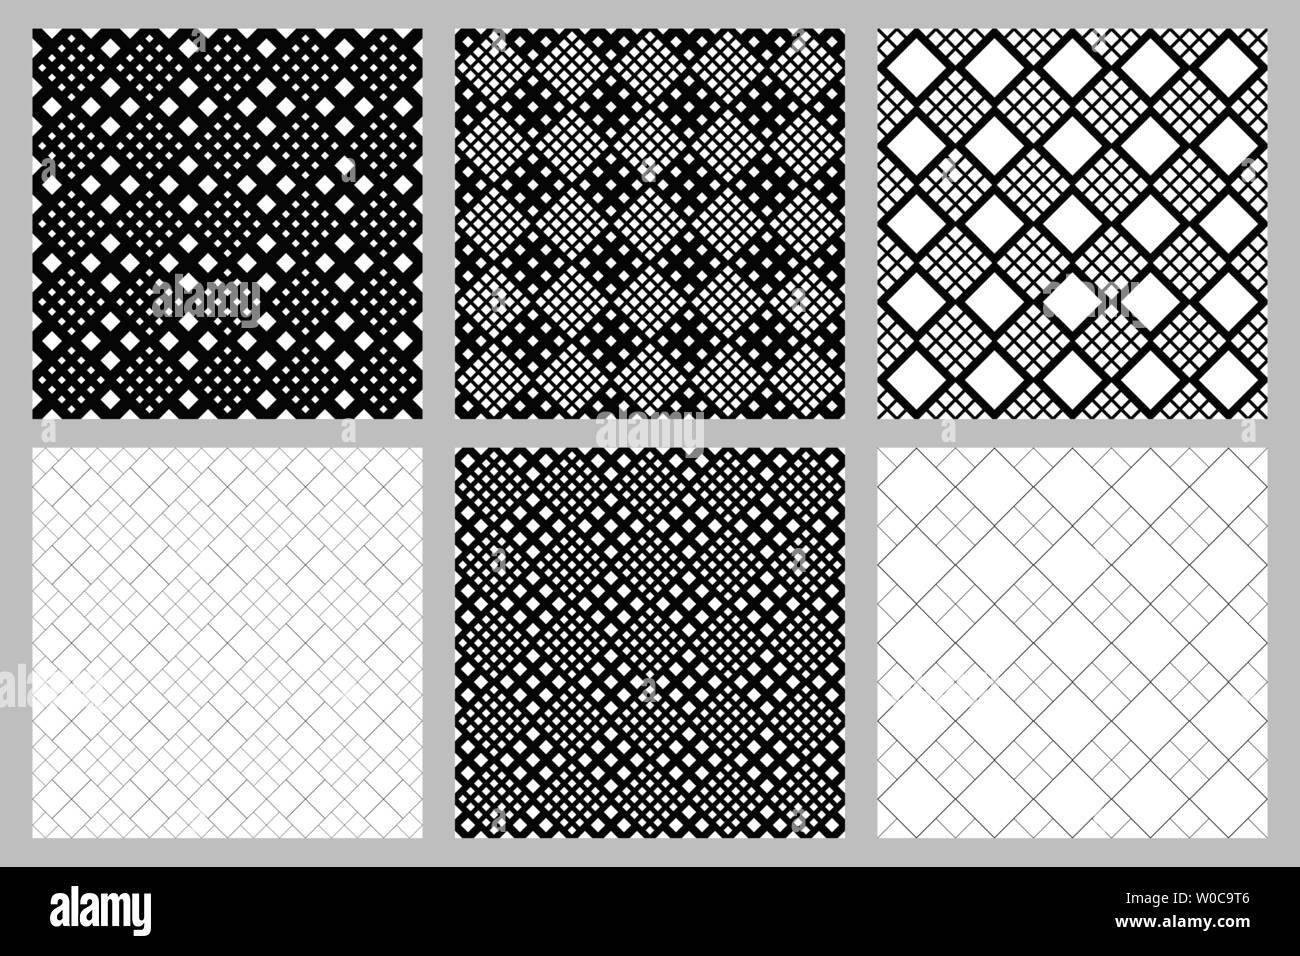 Jeu de fond transparente motif carré - conceptions graphiques vectoriels à partir de carrés en diagonale Illustration de Vecteur